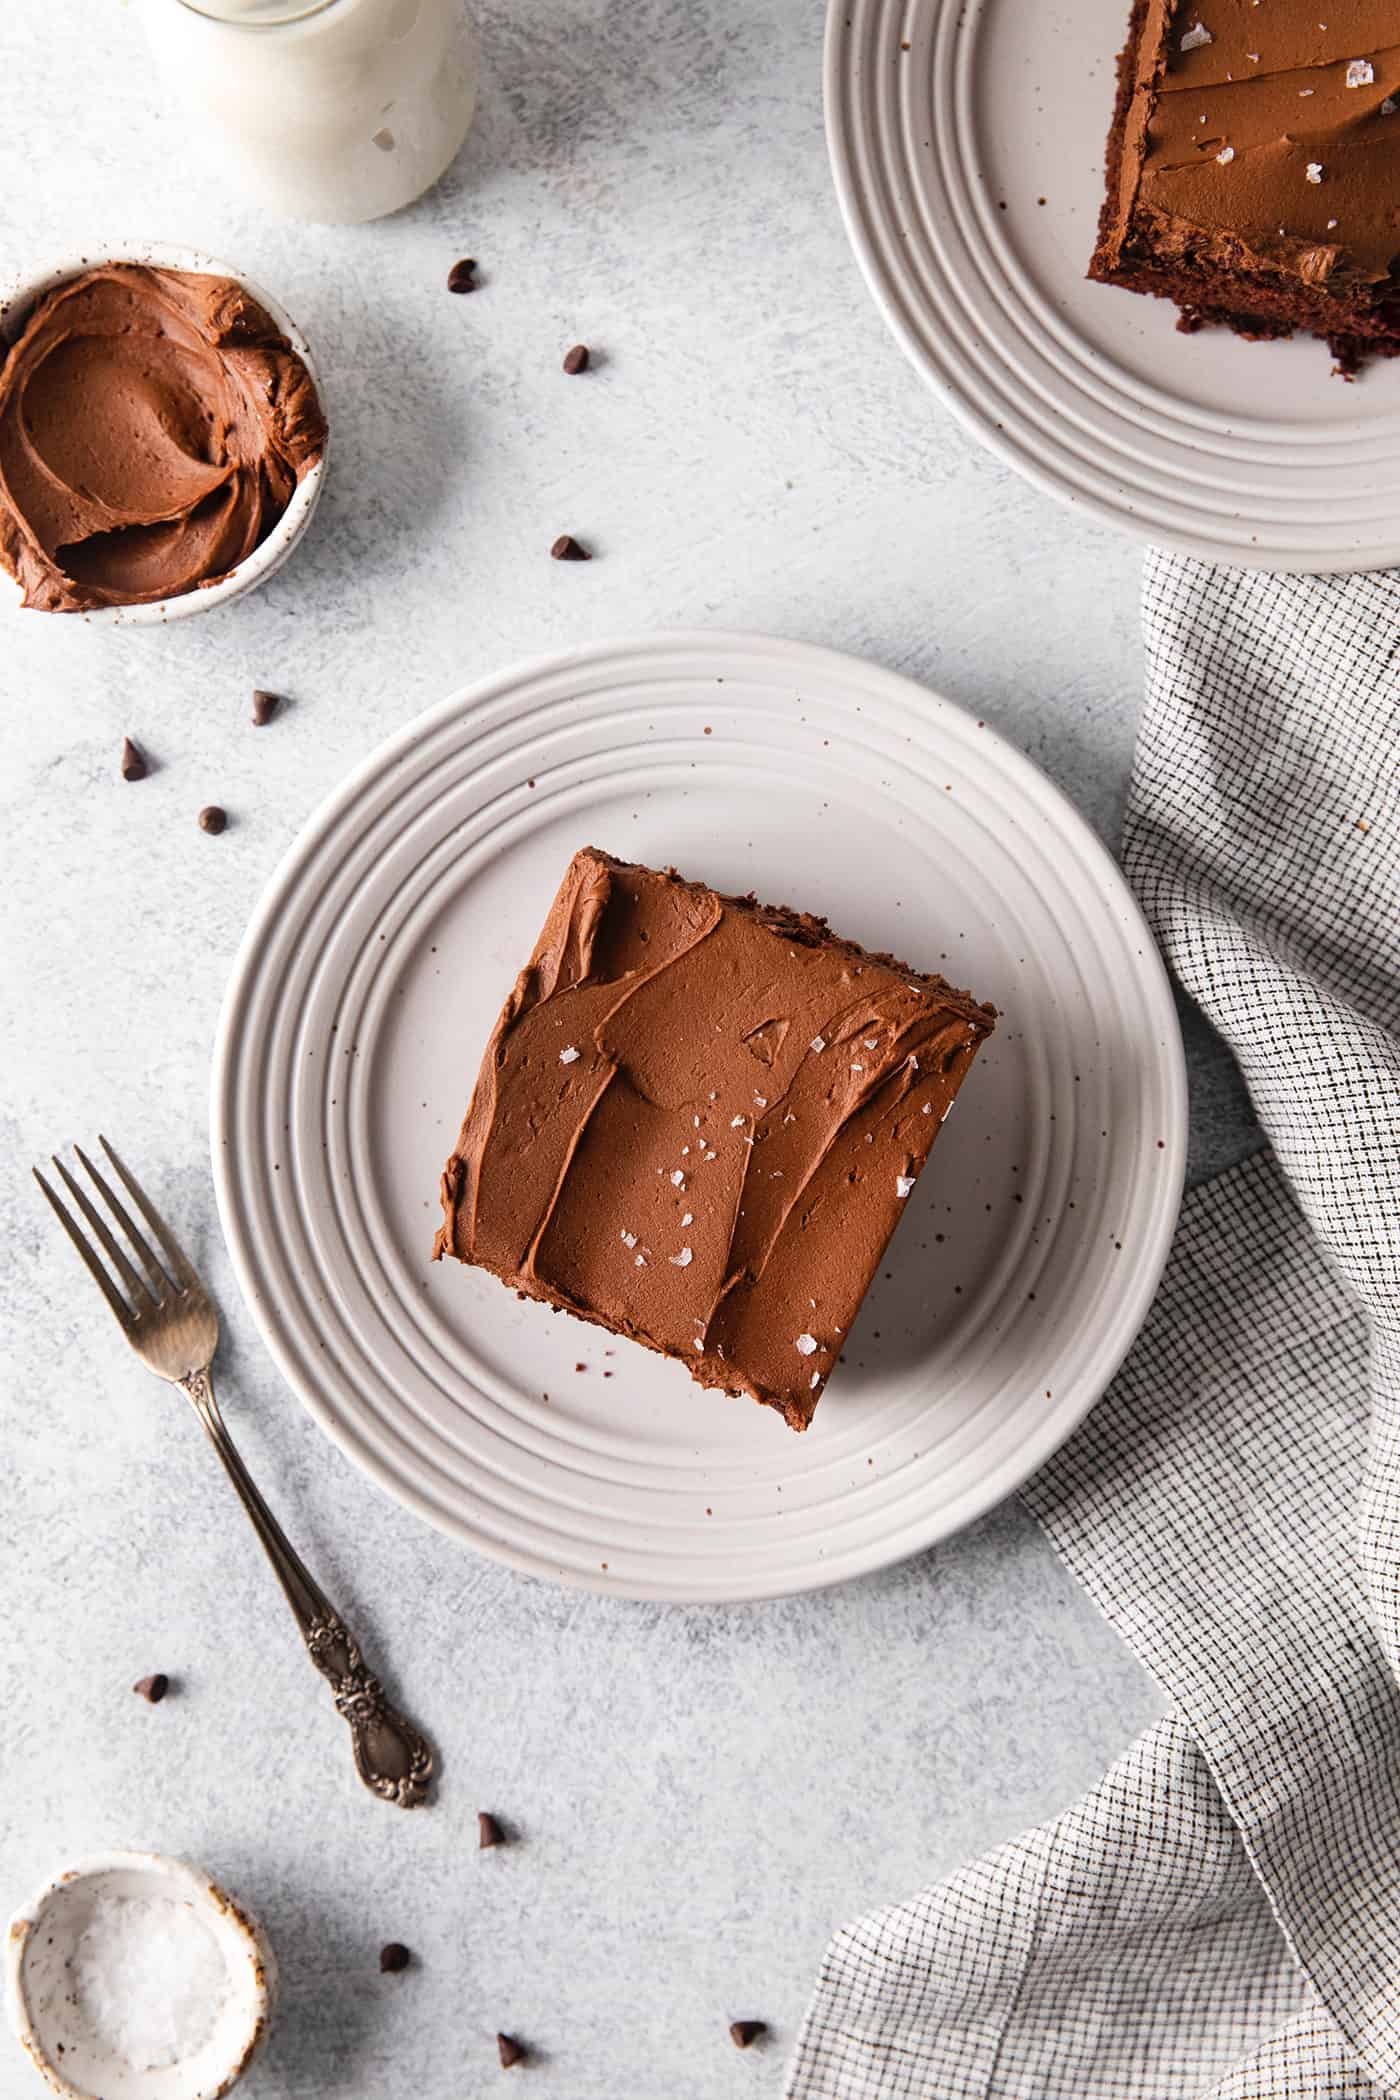 A slice of chocolate wacky cake on a plate